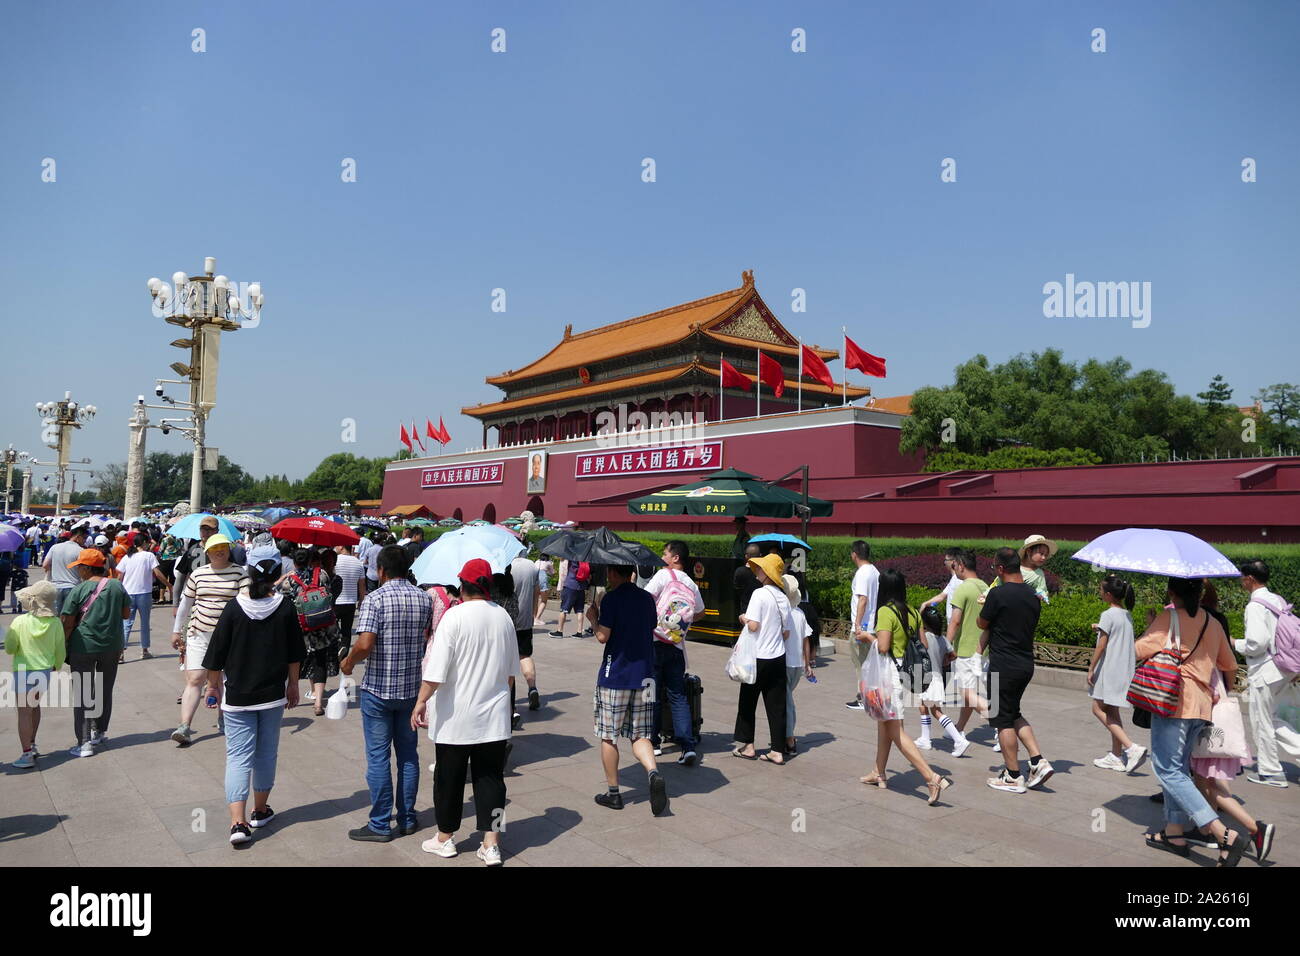 La Tiananmen, o la porta della pace celeste, è una porta monumentale nel centro di Pechino, ampiamente usato come un simbolo nazionale della Cina. Prima costruita durante la dinastia Ming in 1420, Piazza Tiananmen è stata l'ingresso alla città imperiale, entro il quale la Città Proibita è stato posizionato. Foto Stock